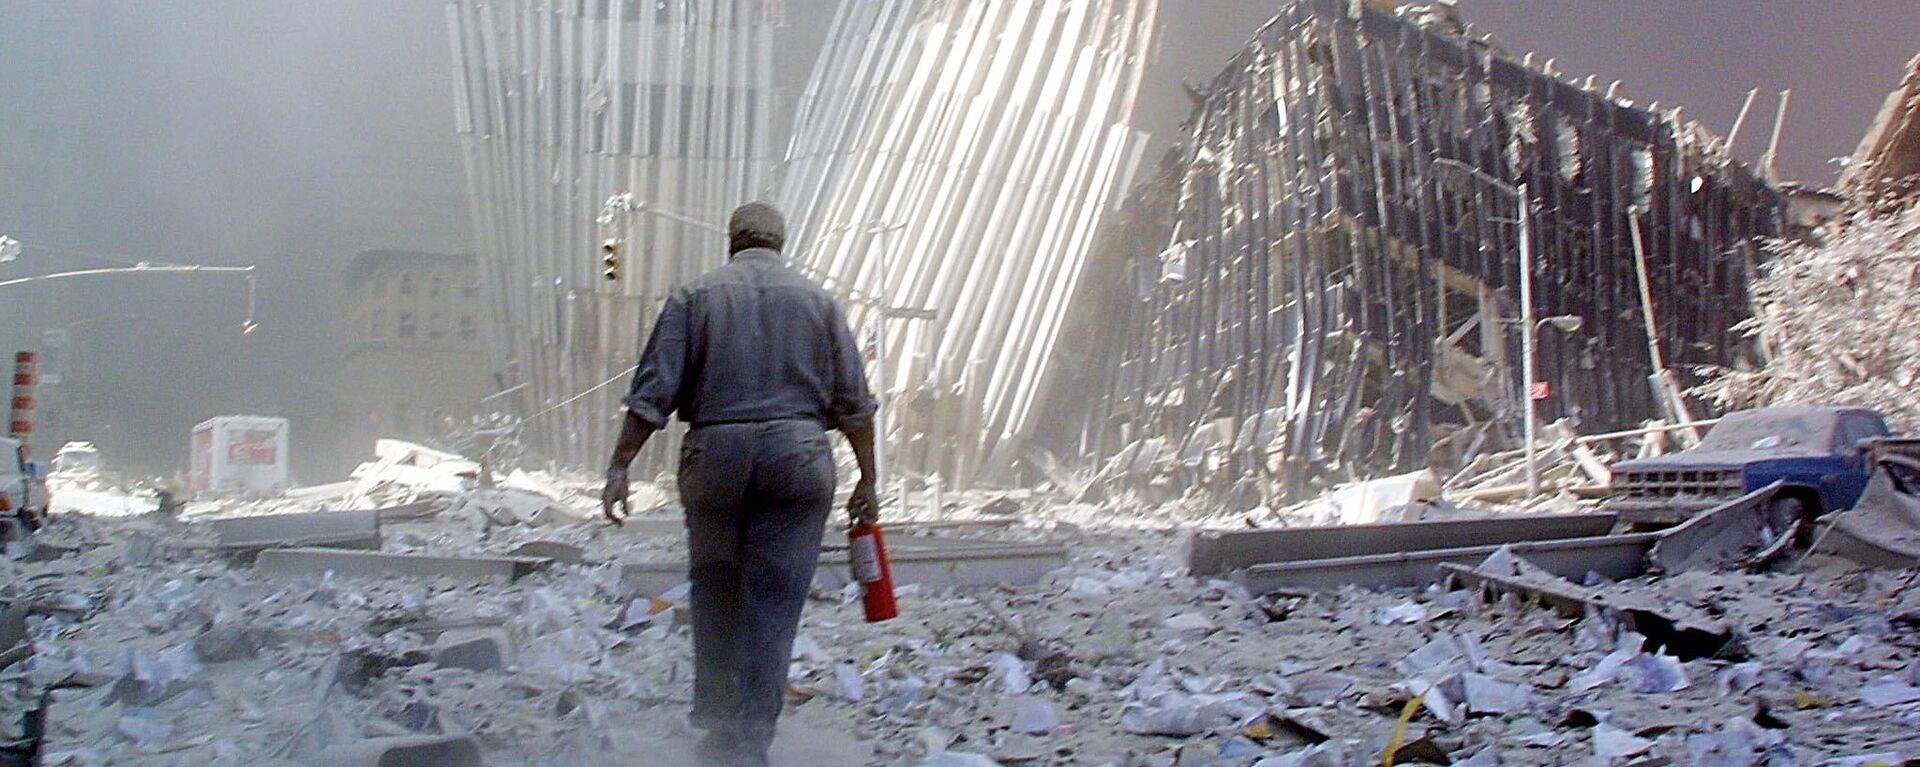 Мужчина с огнетушителем на месте атаки Всемирного торгового центра 11 сентября в Нью-Йорке. Архивное фото - Sputnik Кыргызстан, 1920, 07.09.2021